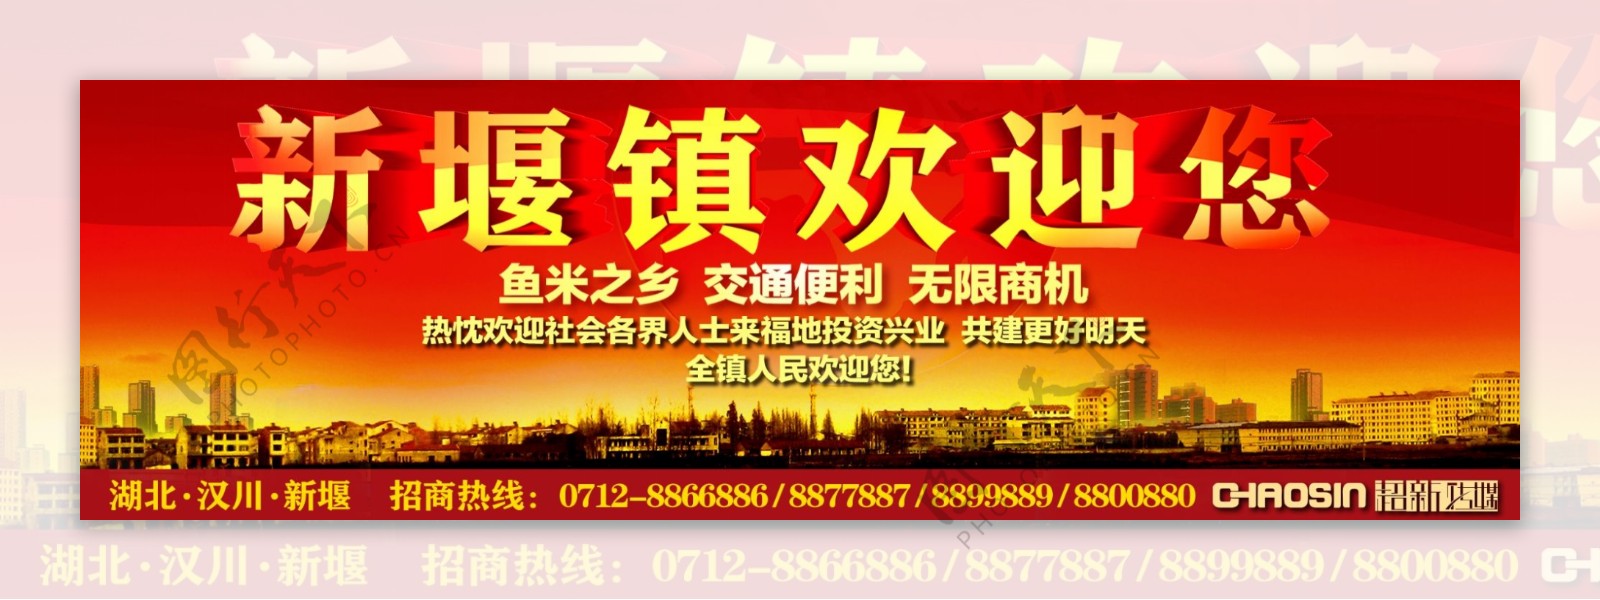 汉川市新堰镇招商引资户外广告图片